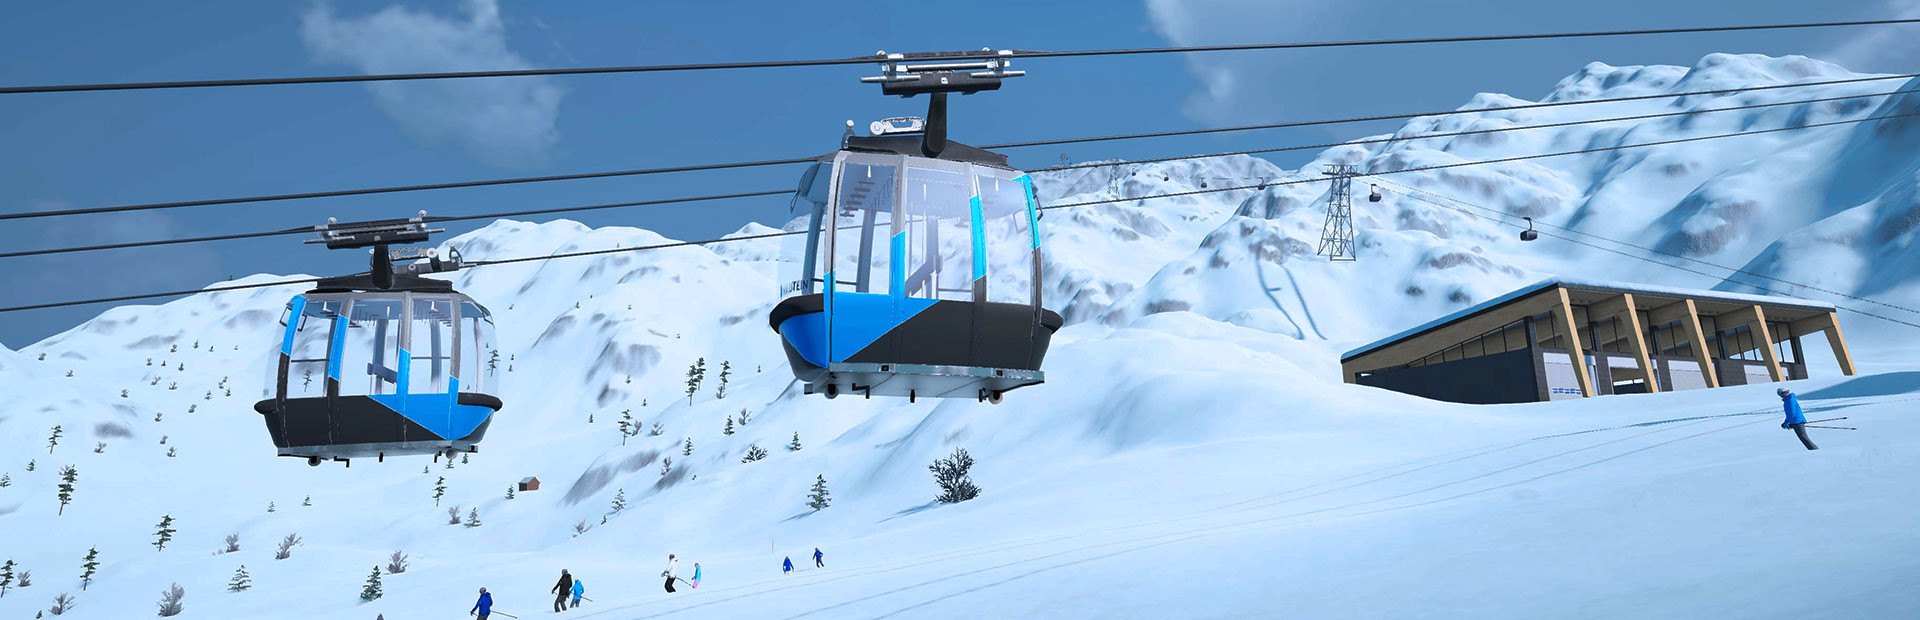 Winter Resort Simulator 2 cover image